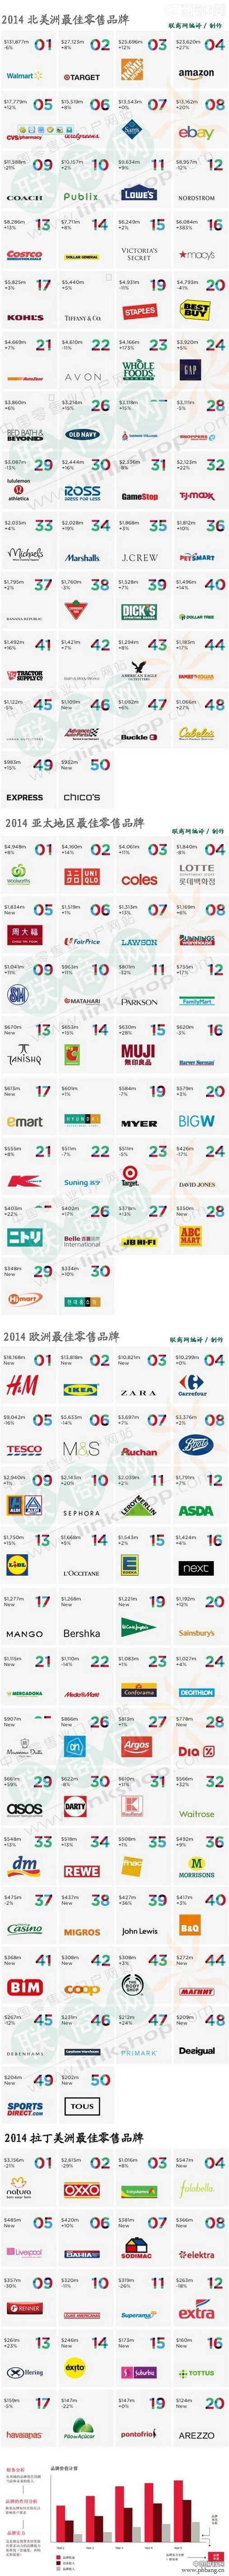 2014全球最有价值的零售品牌排行榜